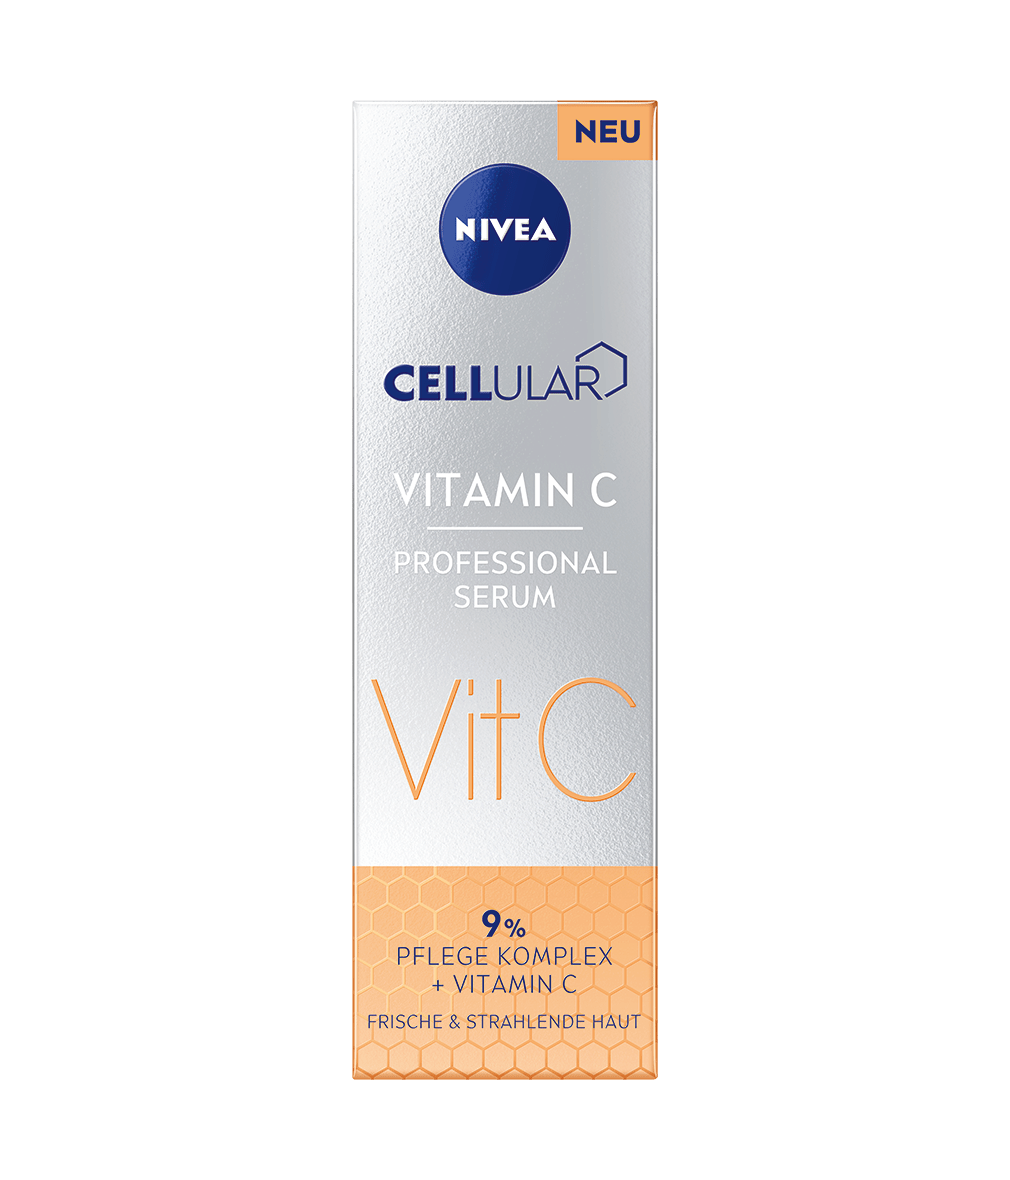 NIVEA Cellular Vitamin C Professional Serum